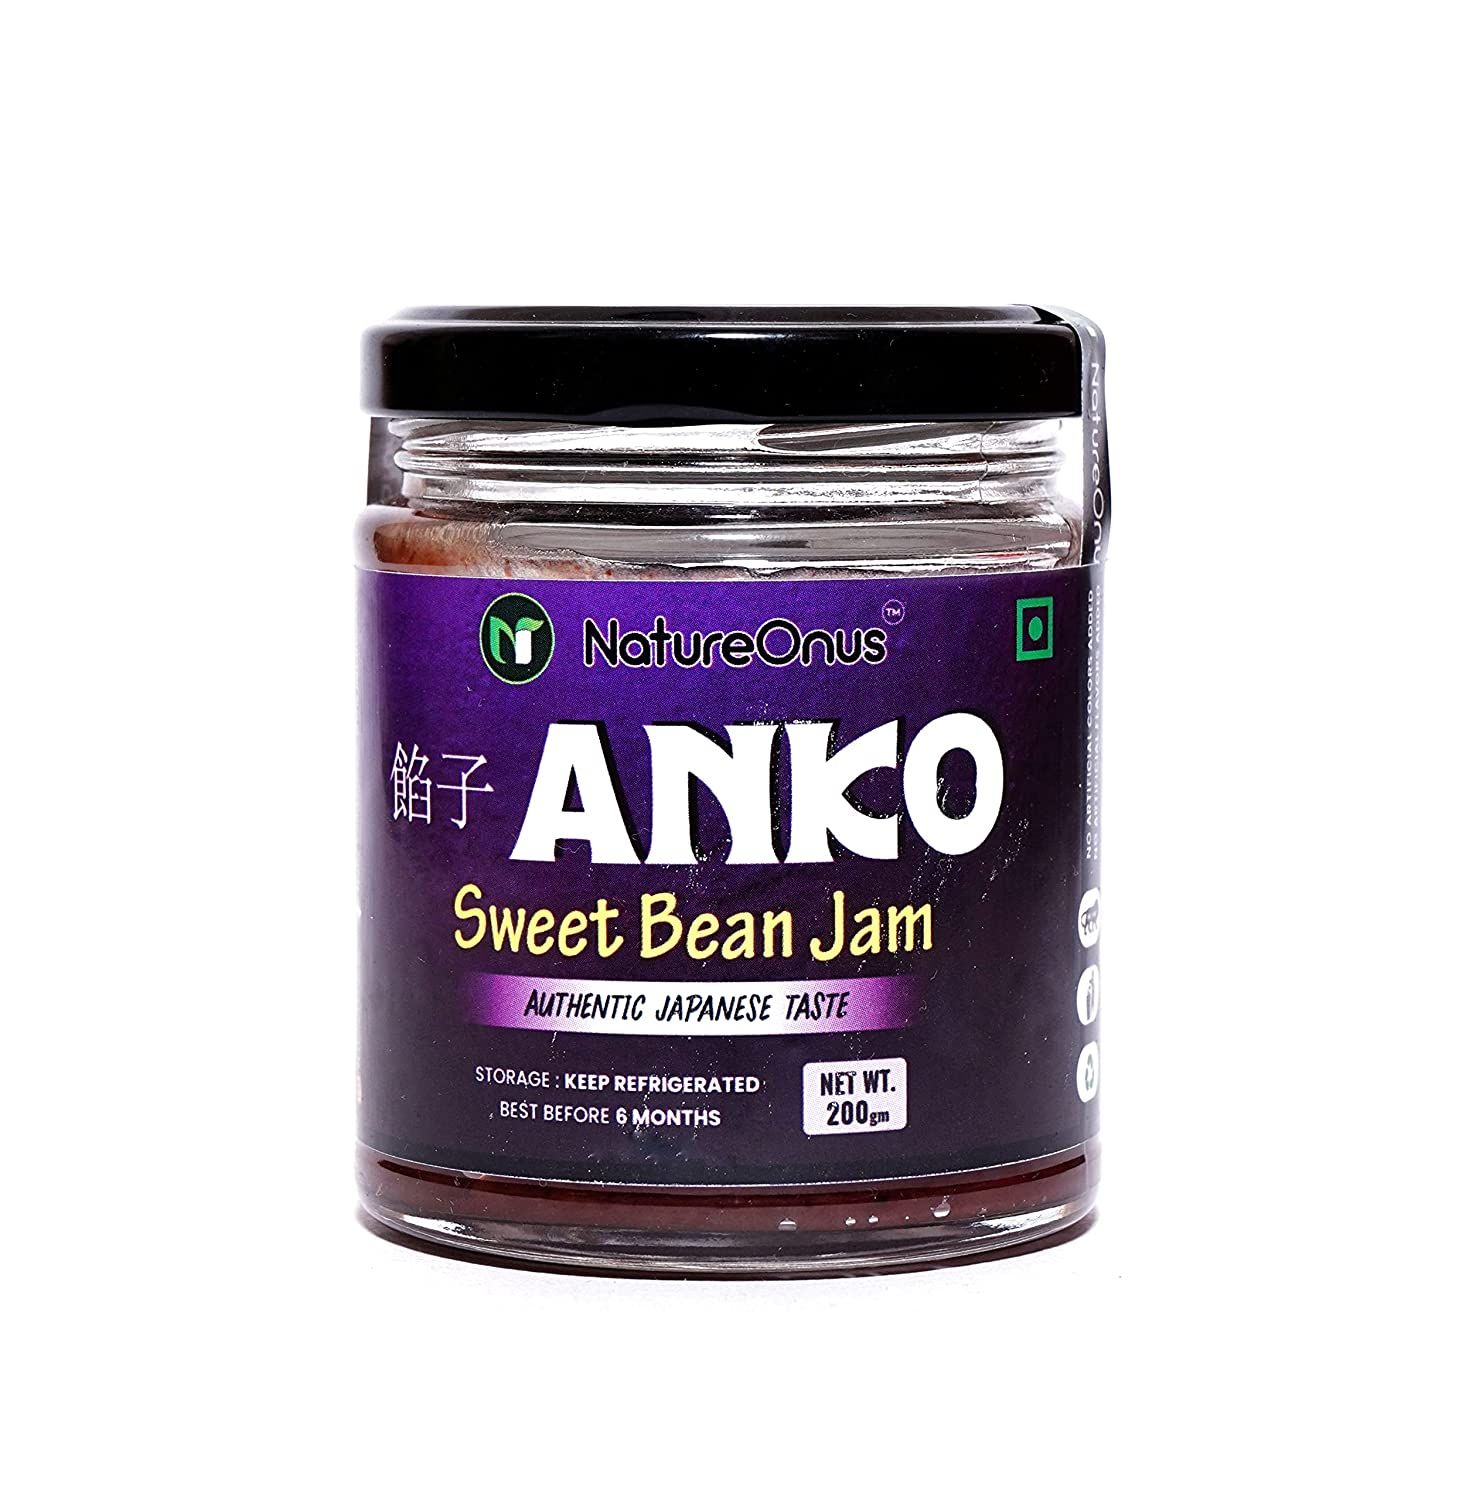 NatureOnus- Anko Sweet Bean Jam Image